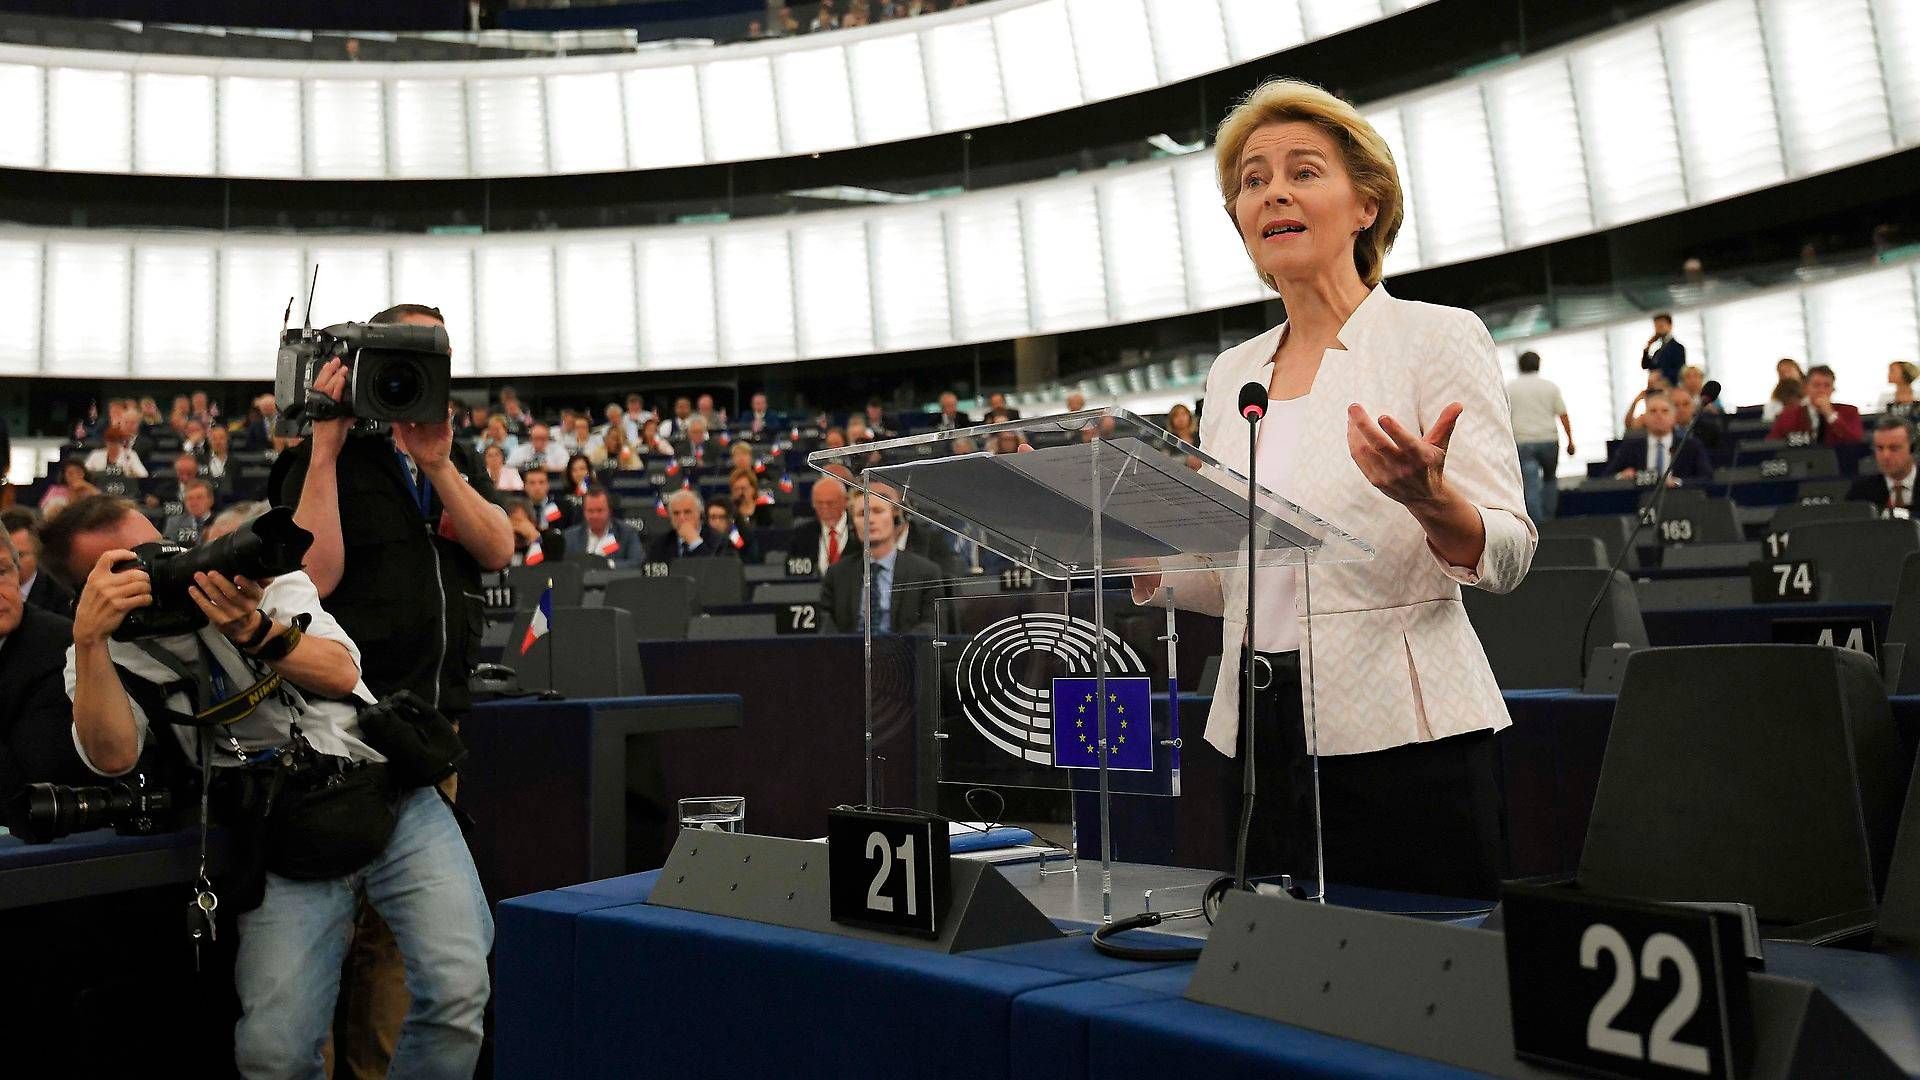 Ursula von der Leyen har lovet at præsentere en "new green deal" - en ny grøn aftale - når hun bliver formand for EU-kommissionen. | Foto: Frederick Florin/AFP/Ritzau Scanpix